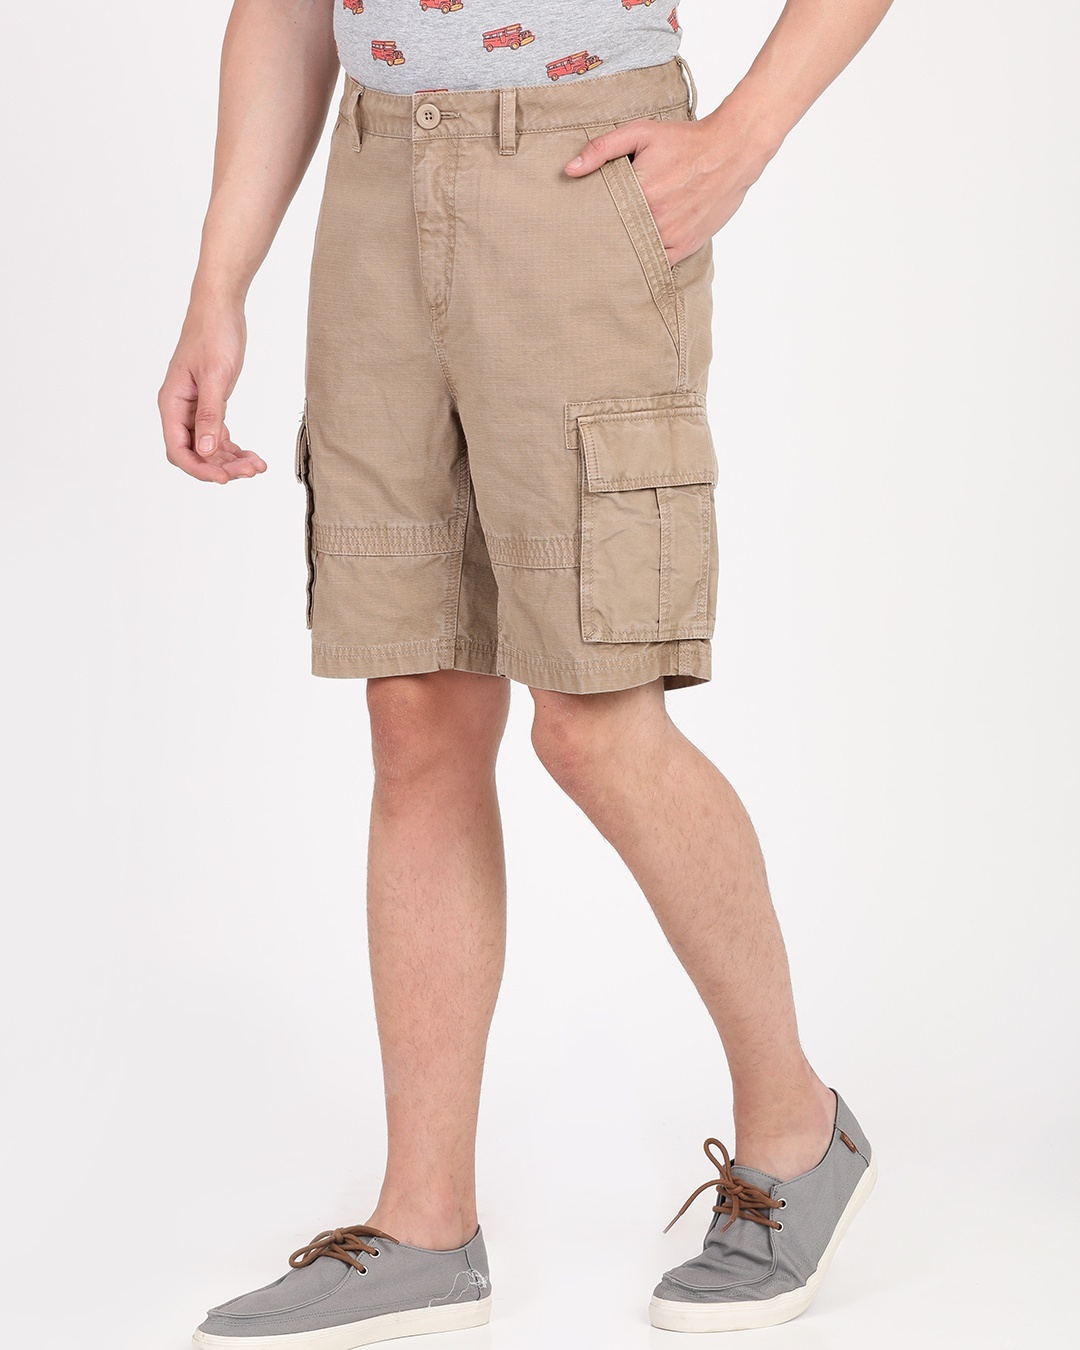 Buy Men's Beige Cotton Shorts for Men Beige Online at Bewakoof